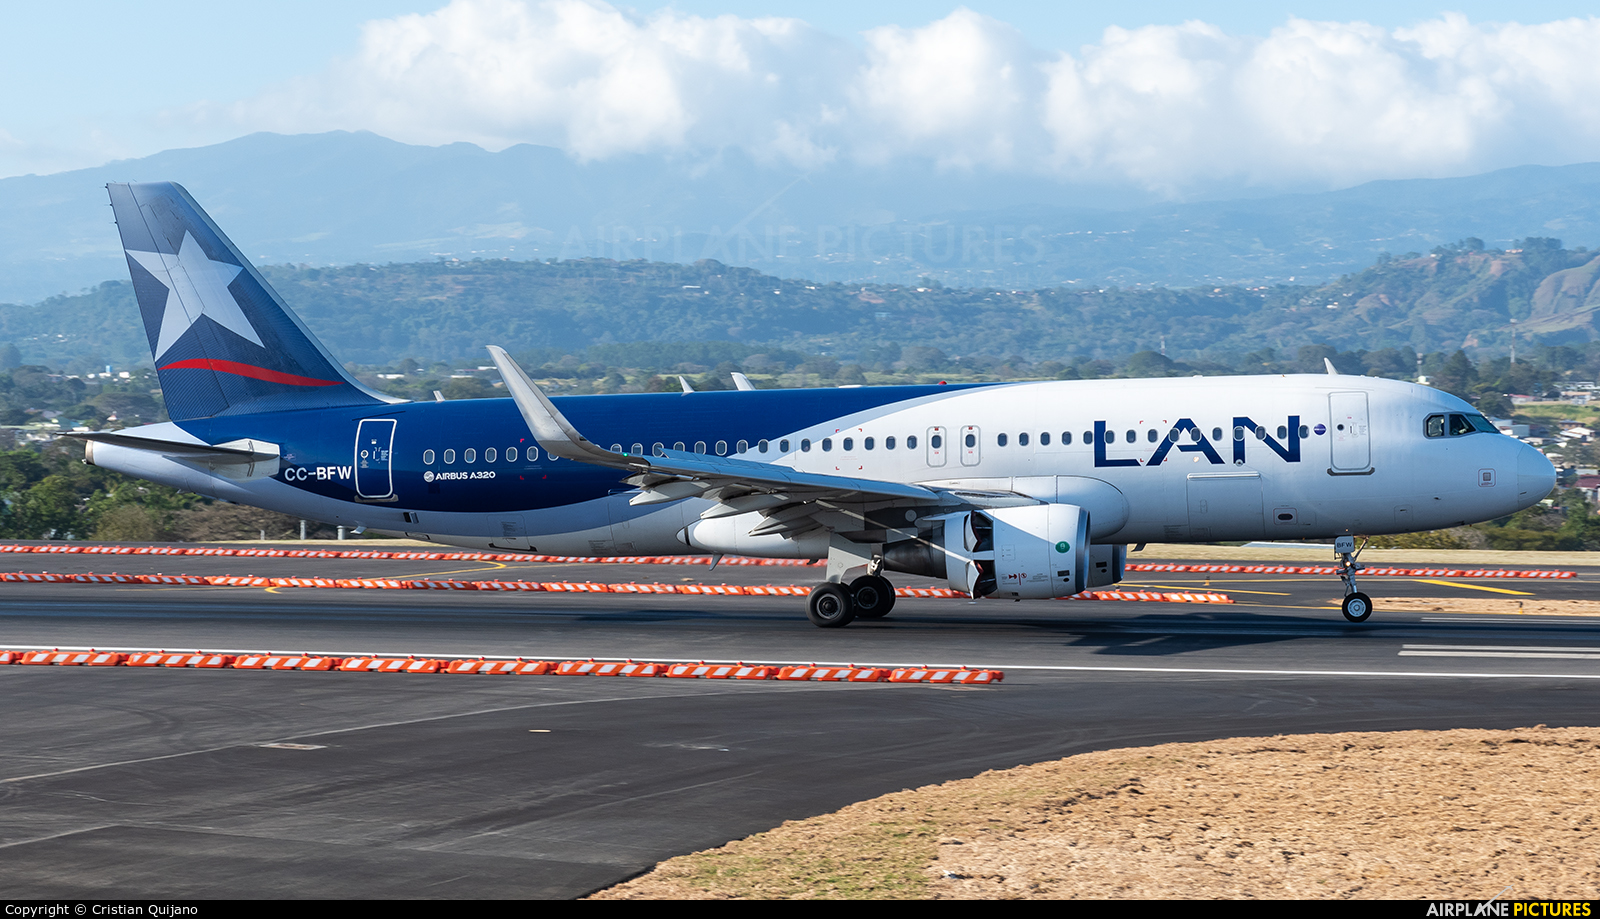 LAN Airlines CC-BFW aircraft at San Jose - Juan Santamaría Intl